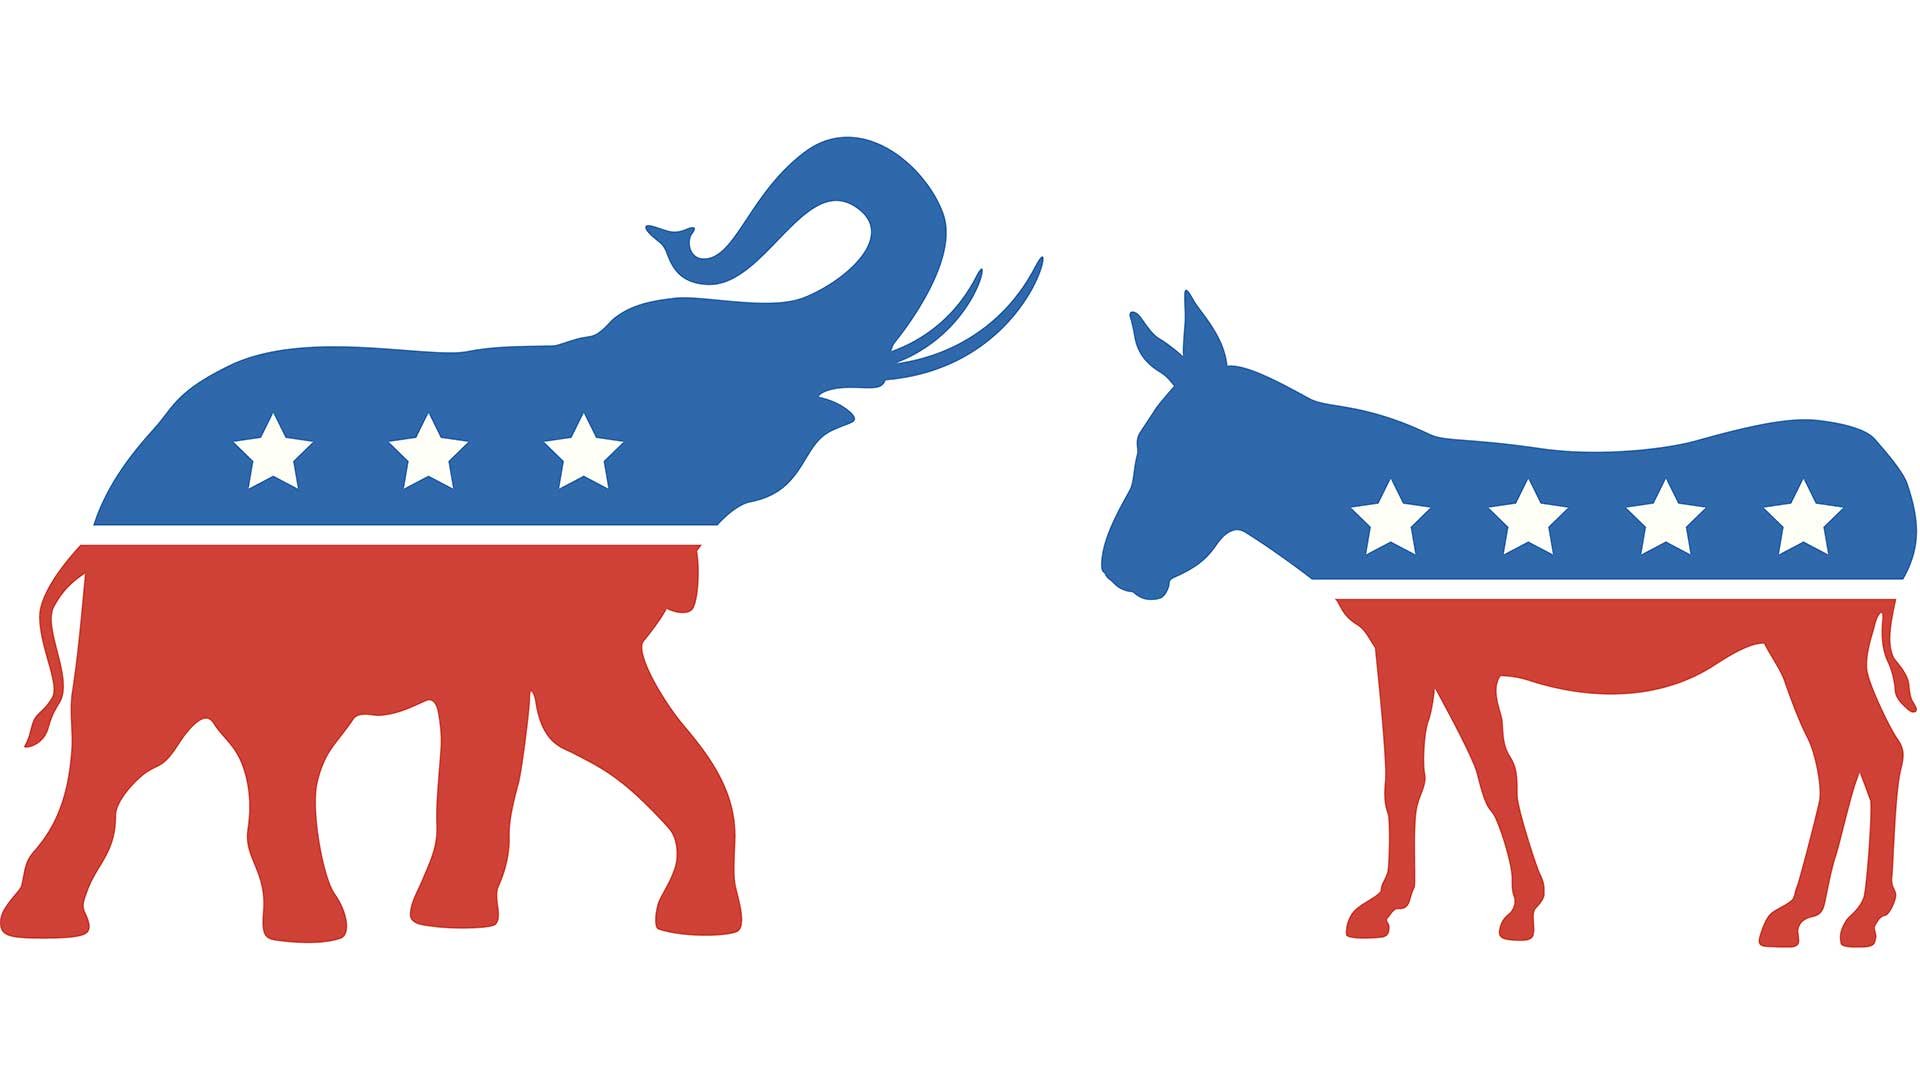 Republicans-vs-Democrats.jpg